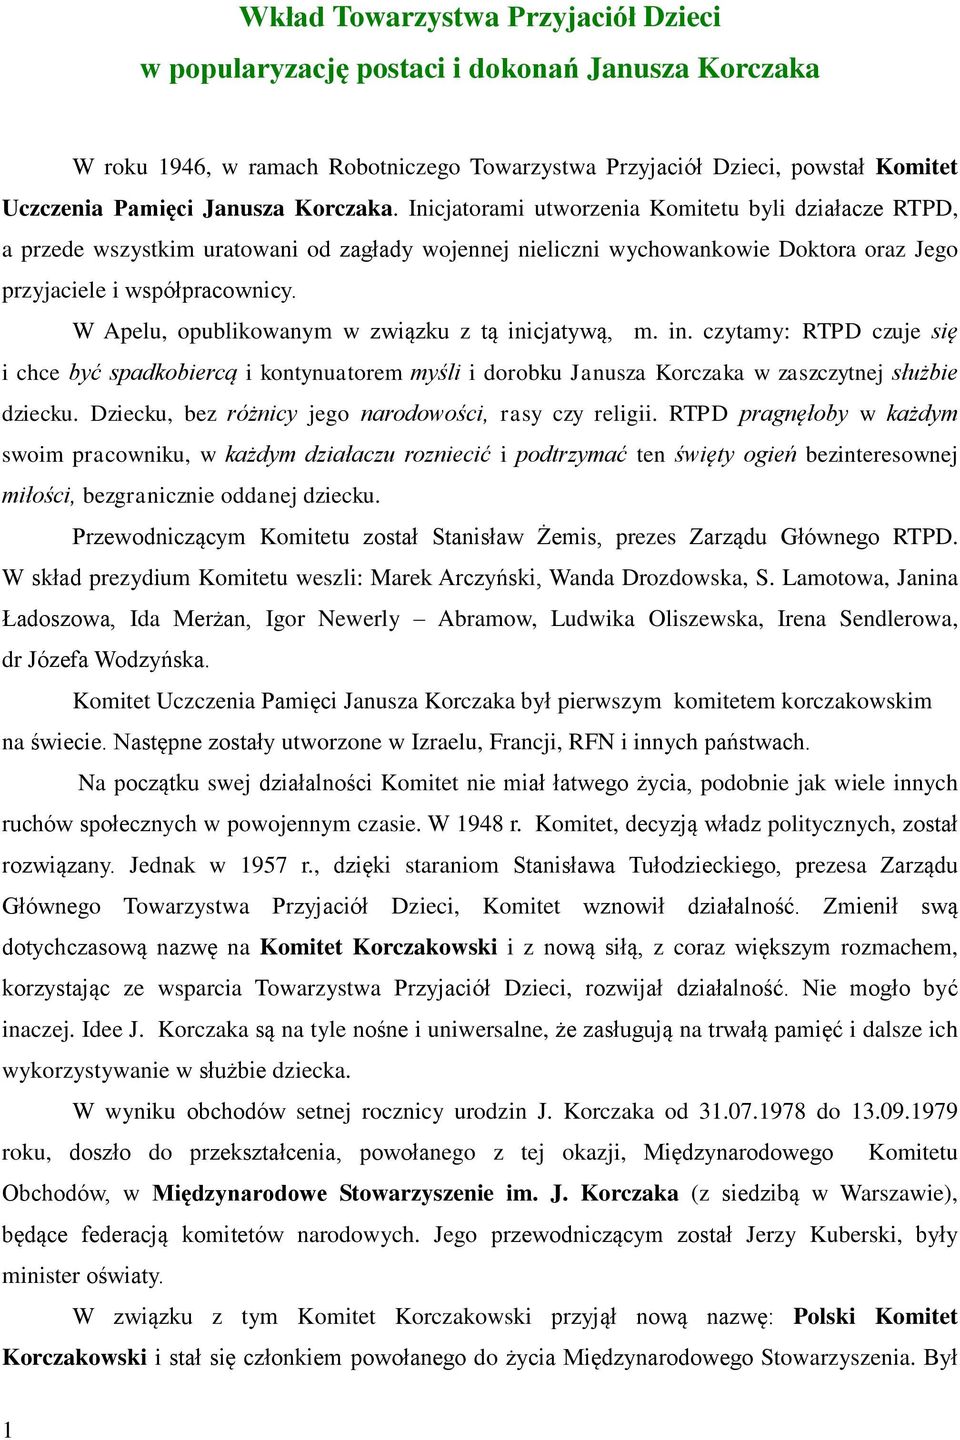 W Apelu, opublikowanym w związku z tą inicjatywą, m. in. czytamy: RTPD czuje się i chce być spadkobiercą i kontynuatorem myśli i dorobku Janusza Korczaka w zaszczytnej służbie dziecku.